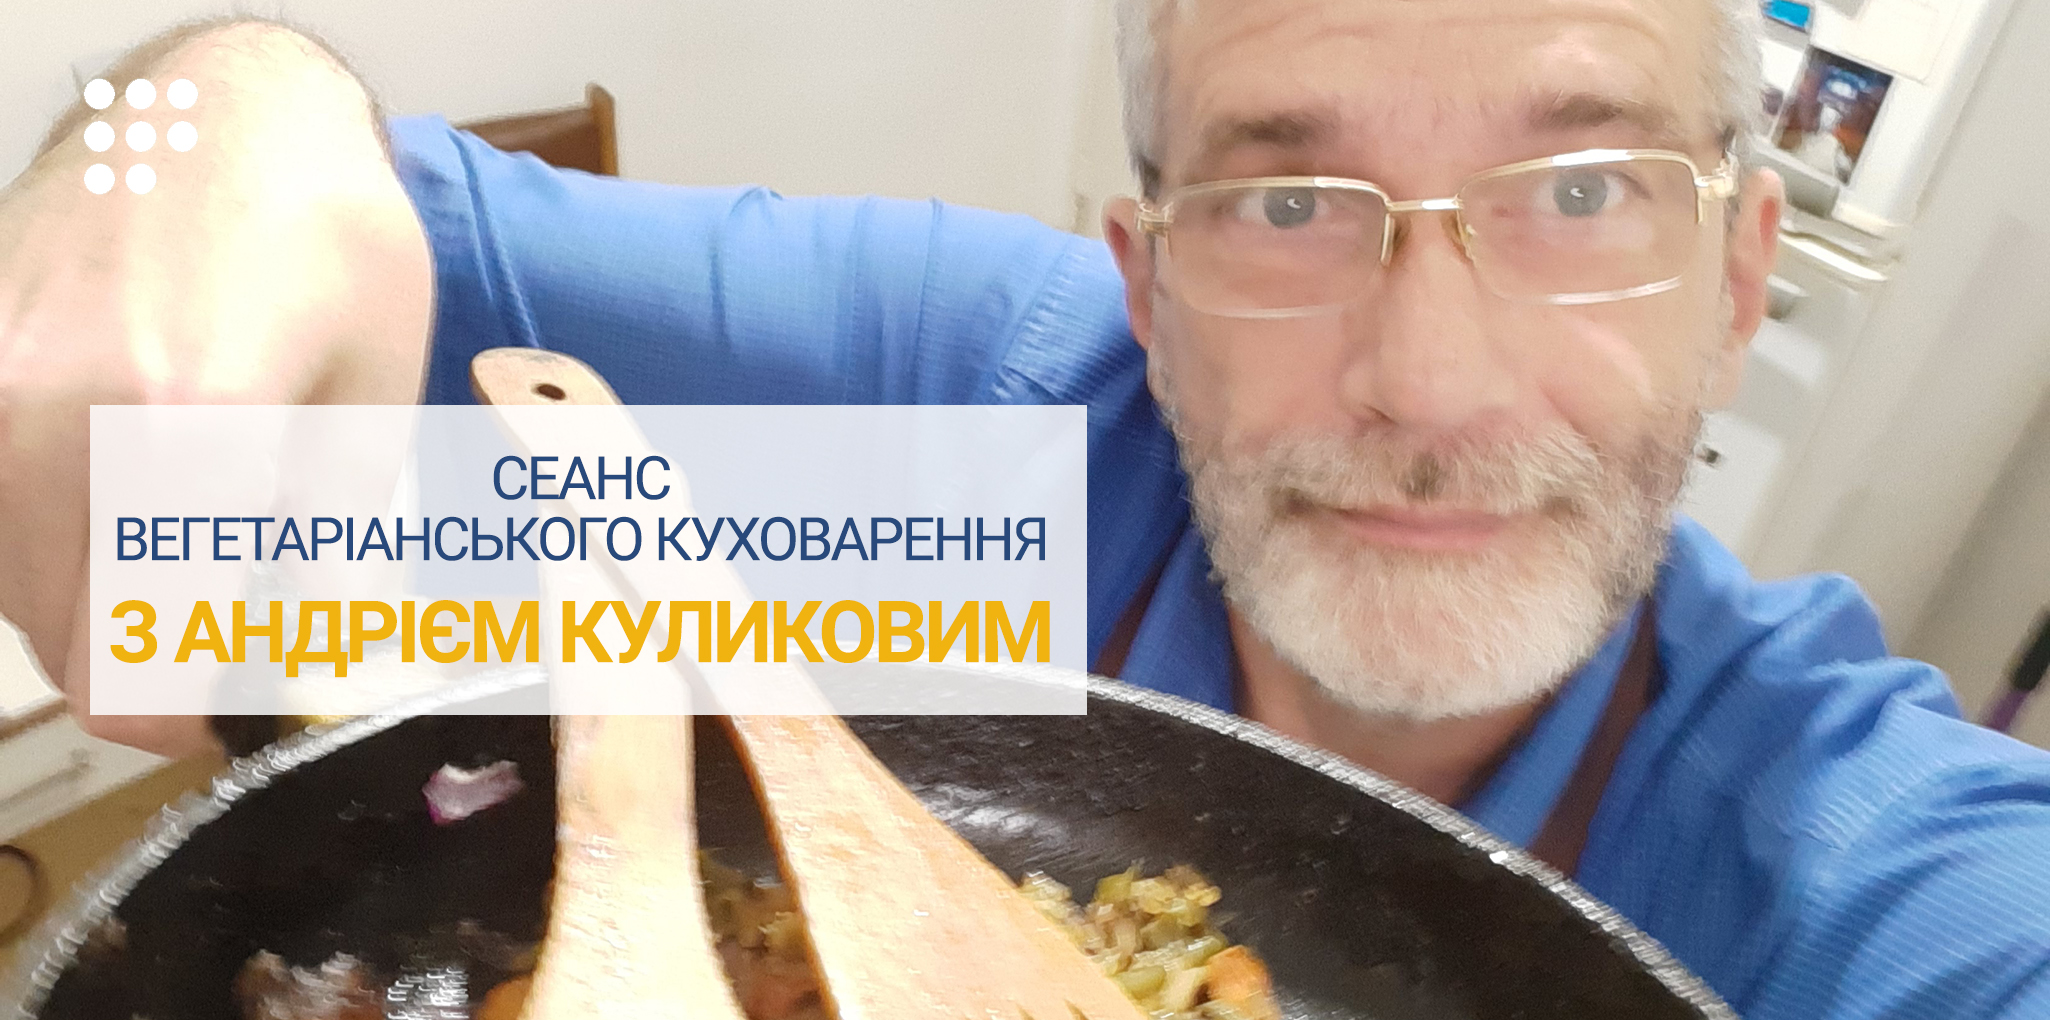 Андрей Куликов приглашает на сеанс приготовления вегетарианской еды онлайн